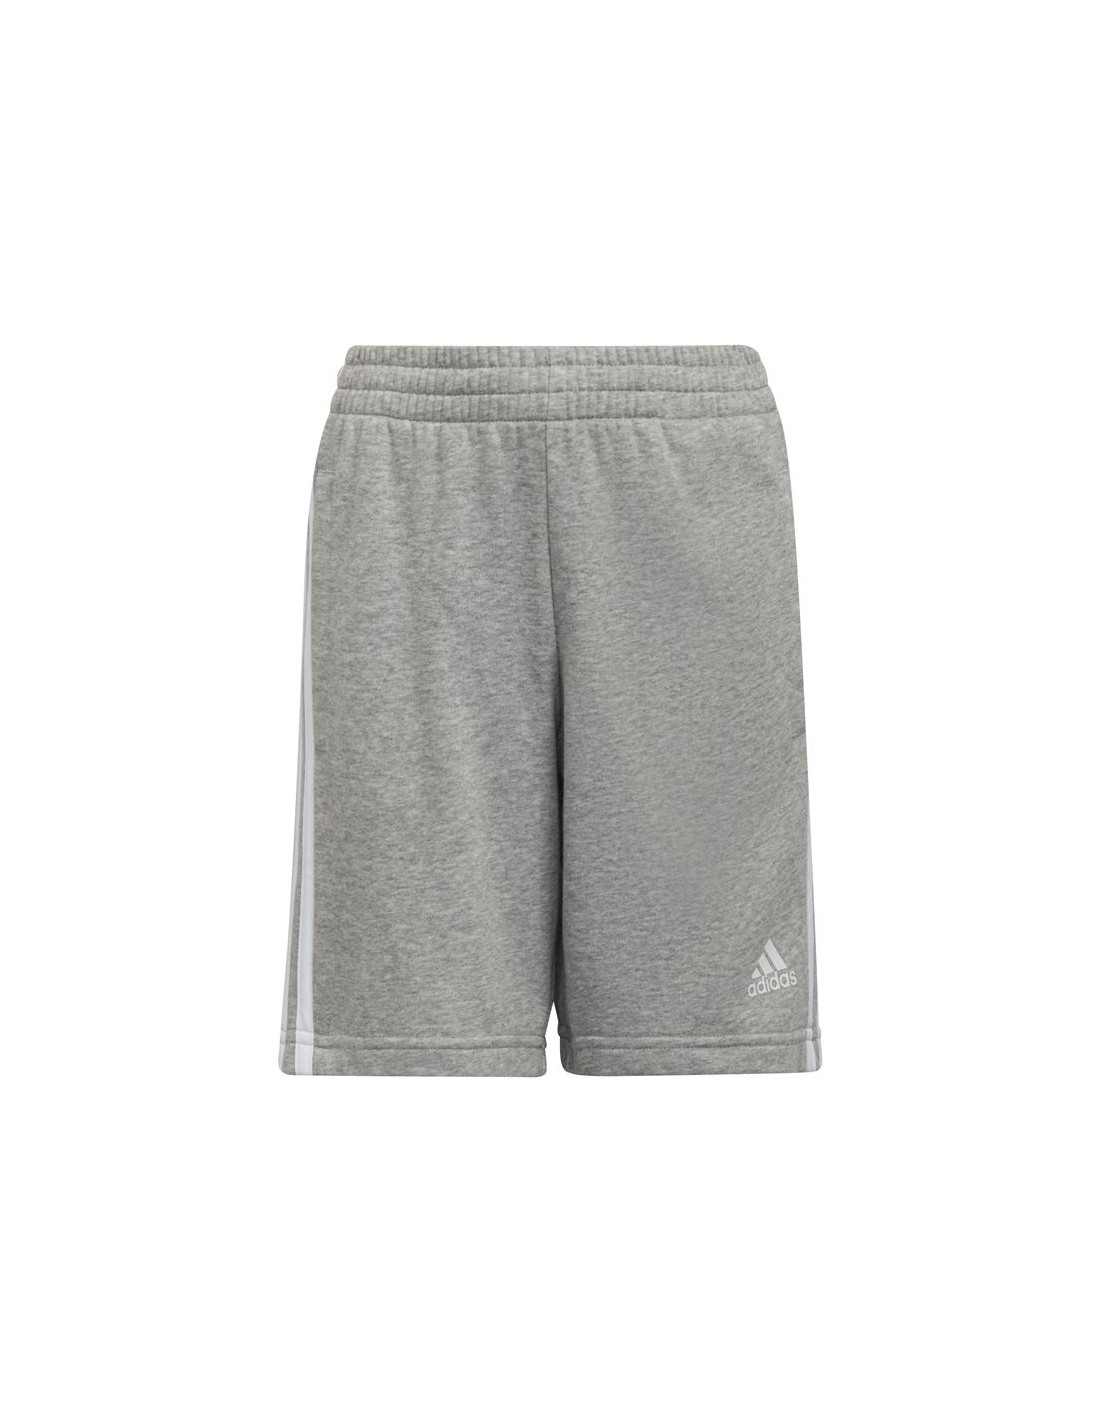 Pantalones cortos adidas essentials 3 bandas niño grey